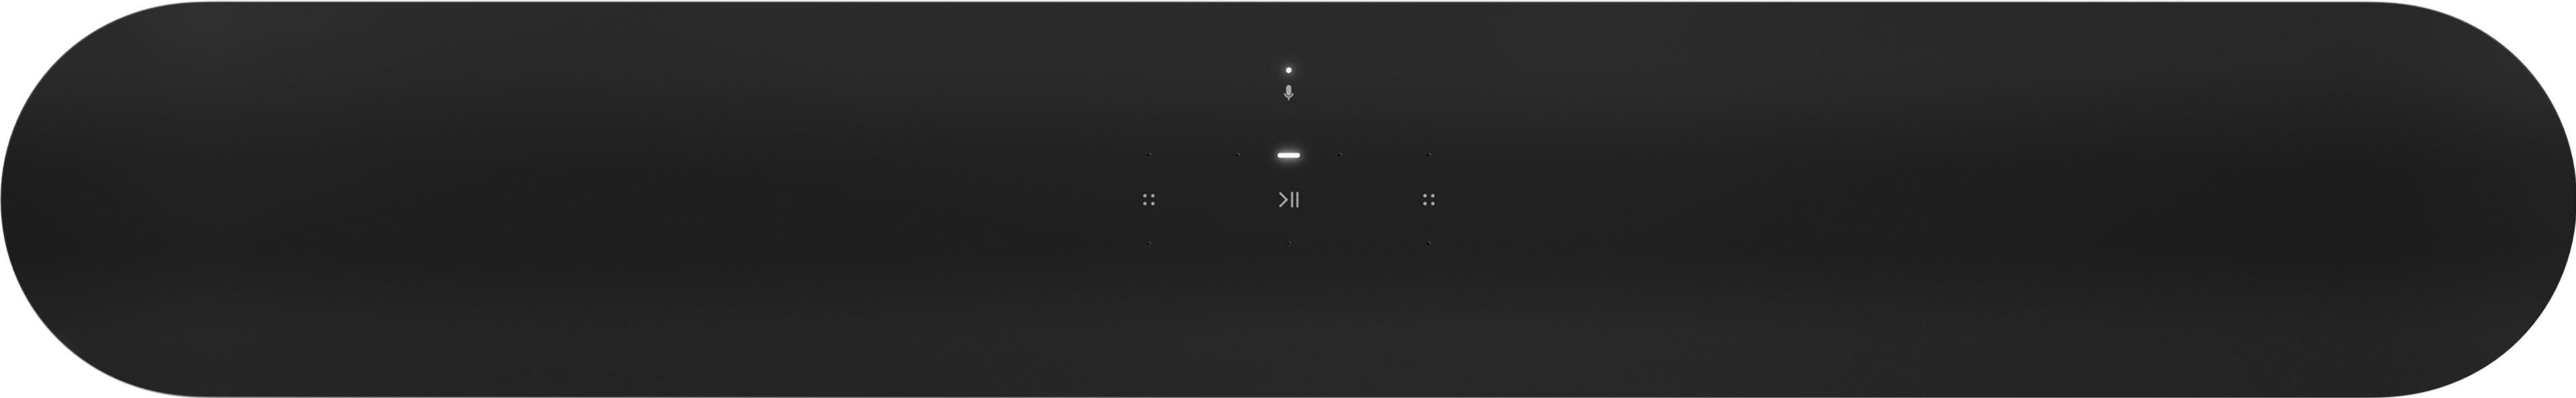 Sonos Beam noire - face supérieure